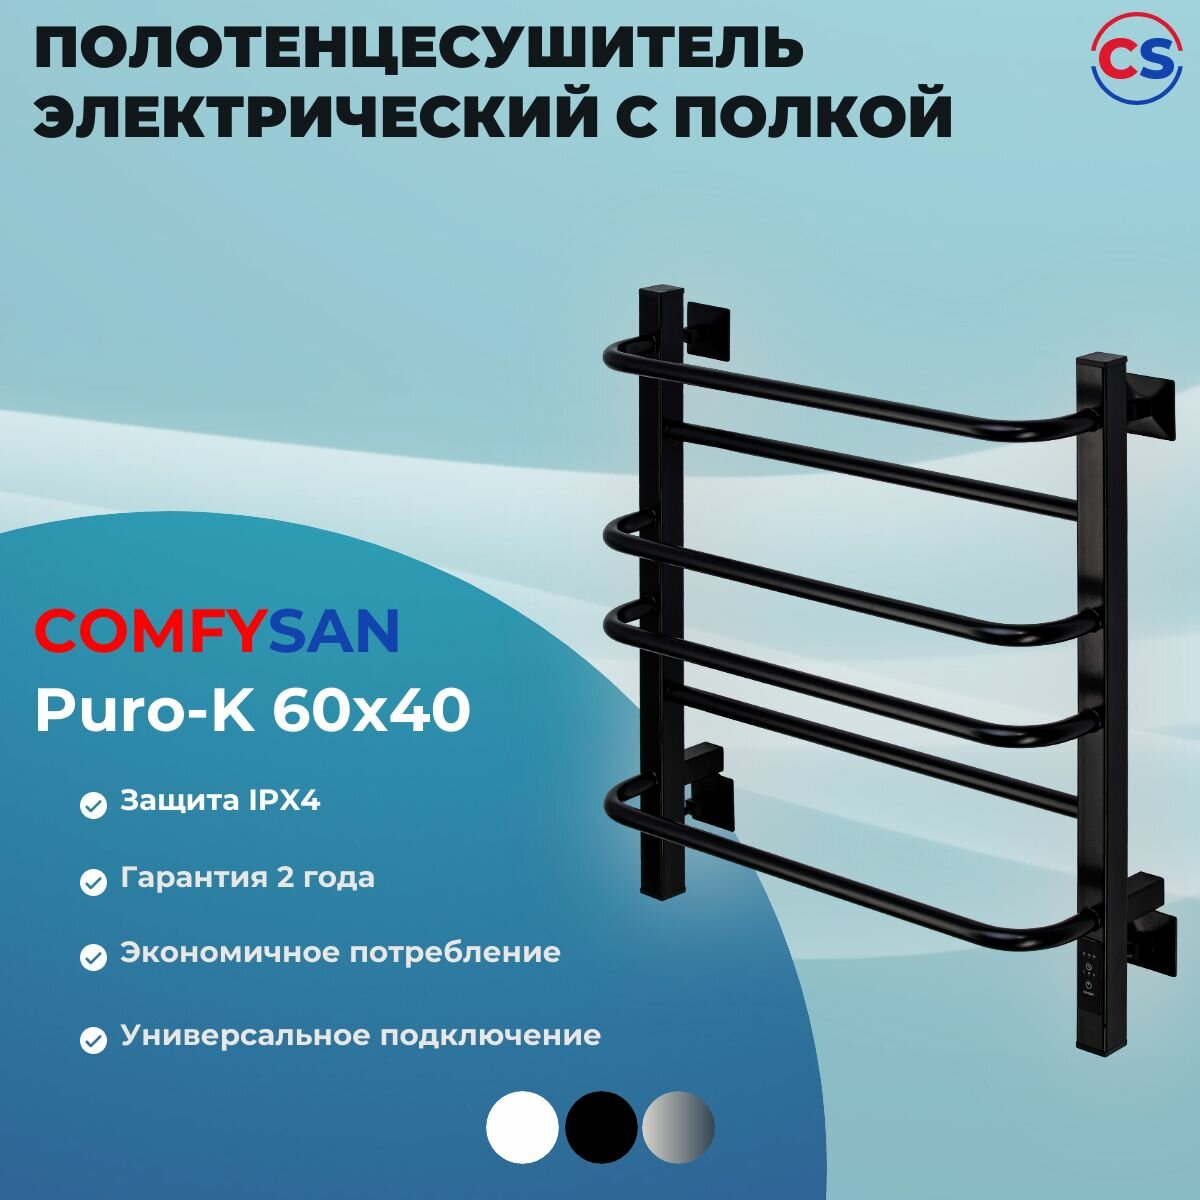 Полотенцесушитель электрический с/т Comfysan Puro-K EC-6 60/40, черный